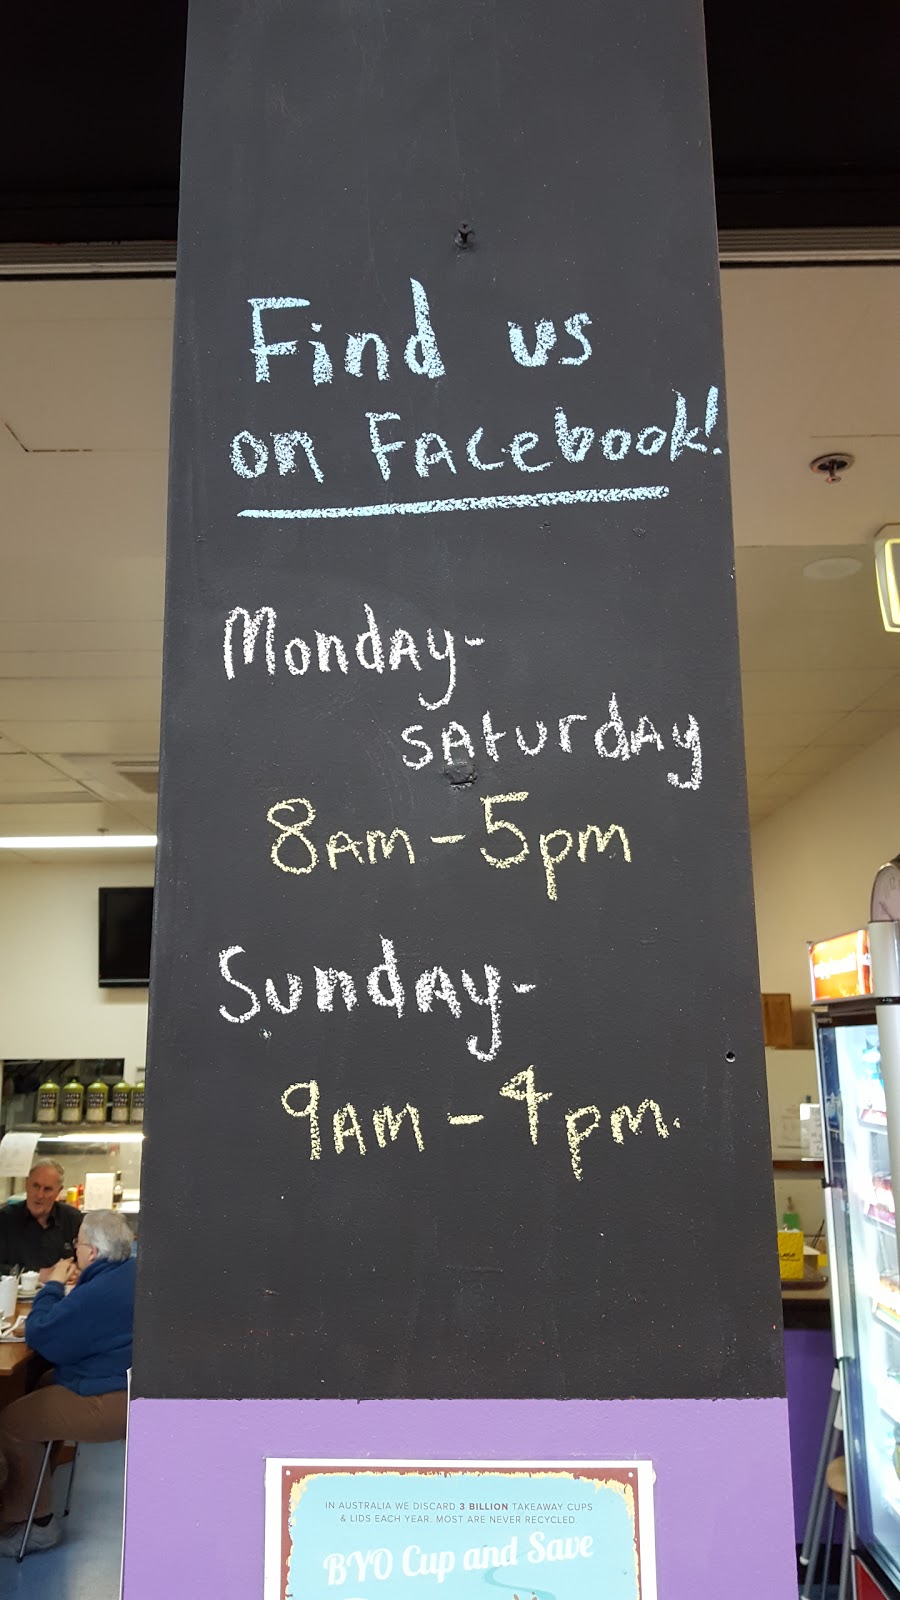 J. J. & K. Cafe | cafe | Shop 3/540 Mt Dandenong Rd, Kilsyth VIC 3137, Australia | 0397233812 OR +61 3 9723 3812